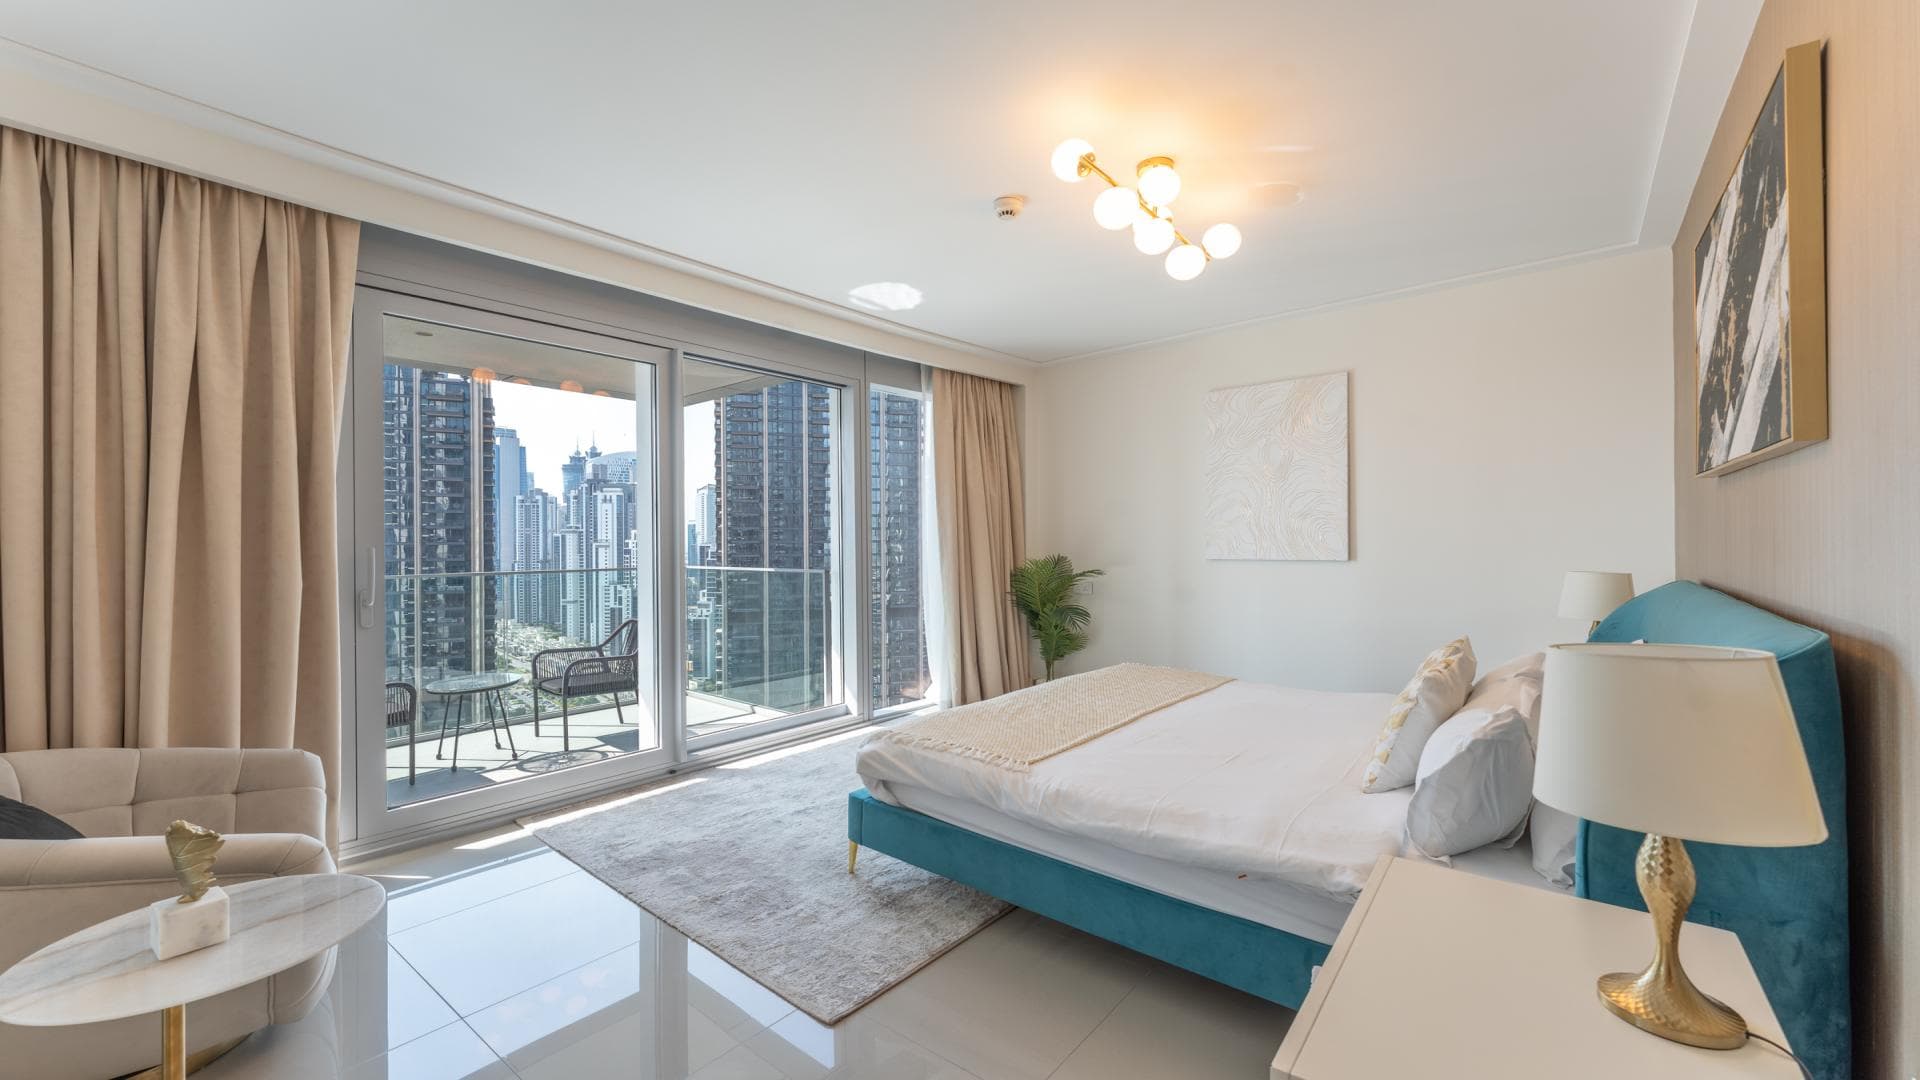 2 Bedroom Apartment For Rent Al Ramth 21 Lp37275 4fb83a45f378ac0.jpg